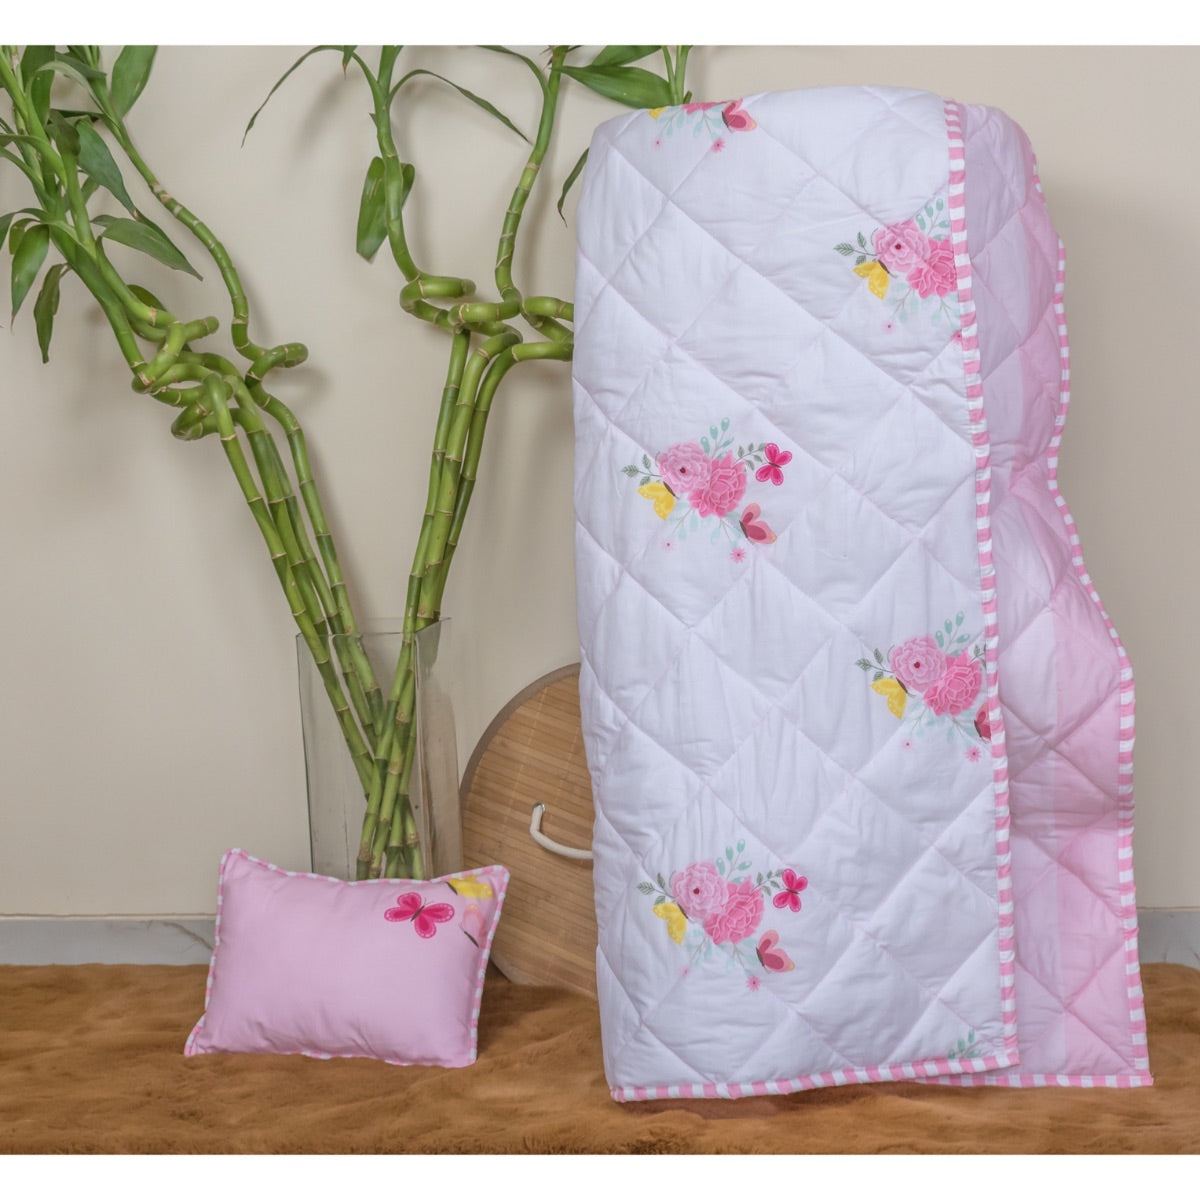 Little By Little Floral & Flutter Baby Quilt Blanket, Pink